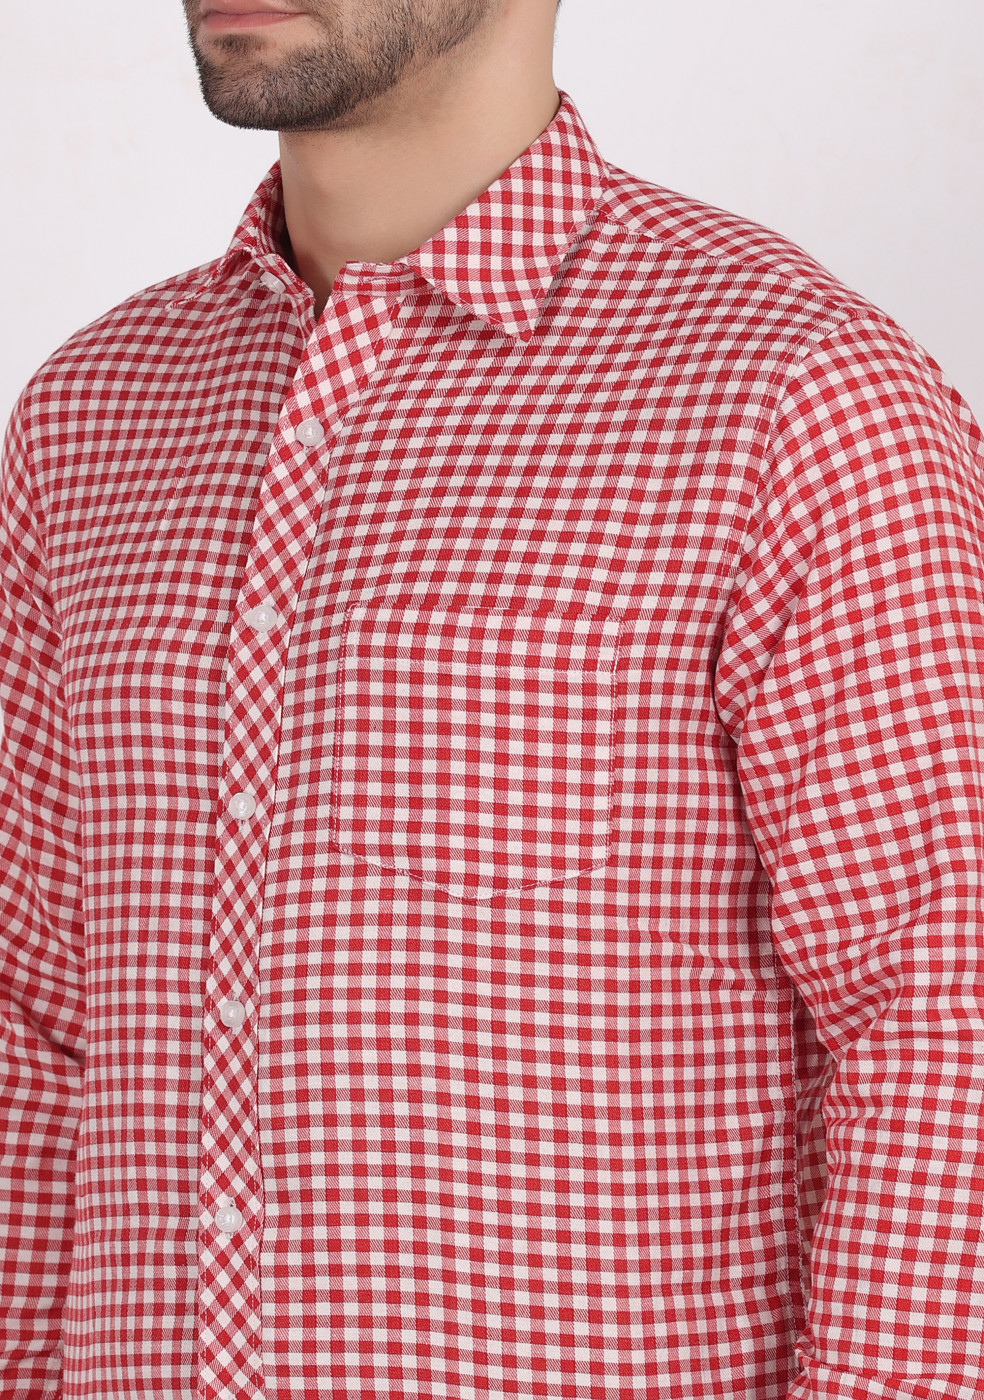 ASHTOM Red White Check Shirt For Men